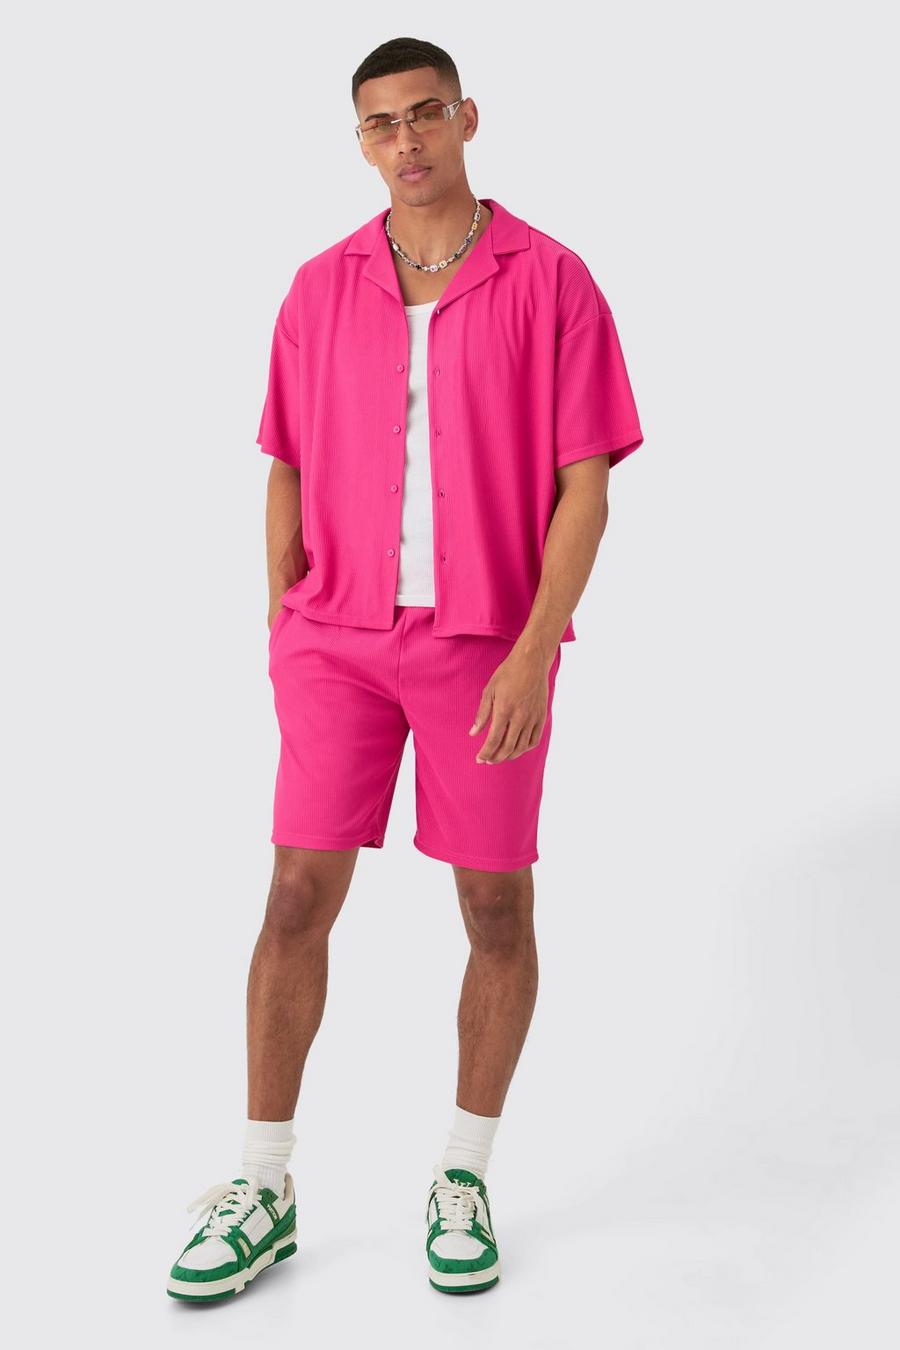 Kurzärmliges kastiges geripptes Hemd & Shorts, Hot pink